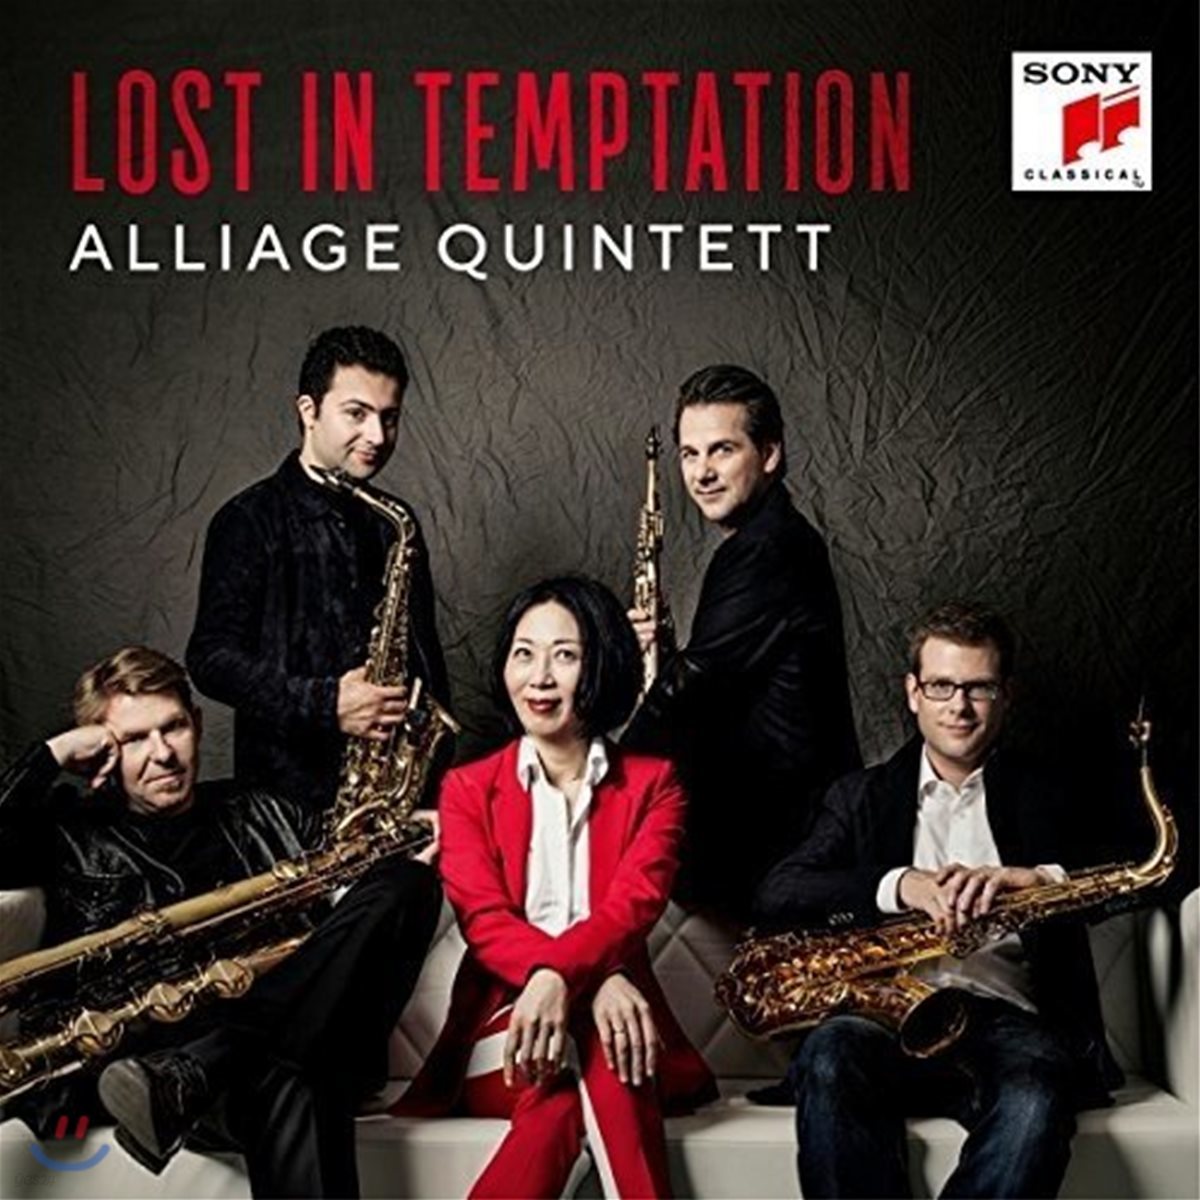 Alliage Quintett 로스트 인 템테이션 - 생상스 / 레스피기 / 바일 / 브람스 / 퍼셀 (Lost in Temptation)